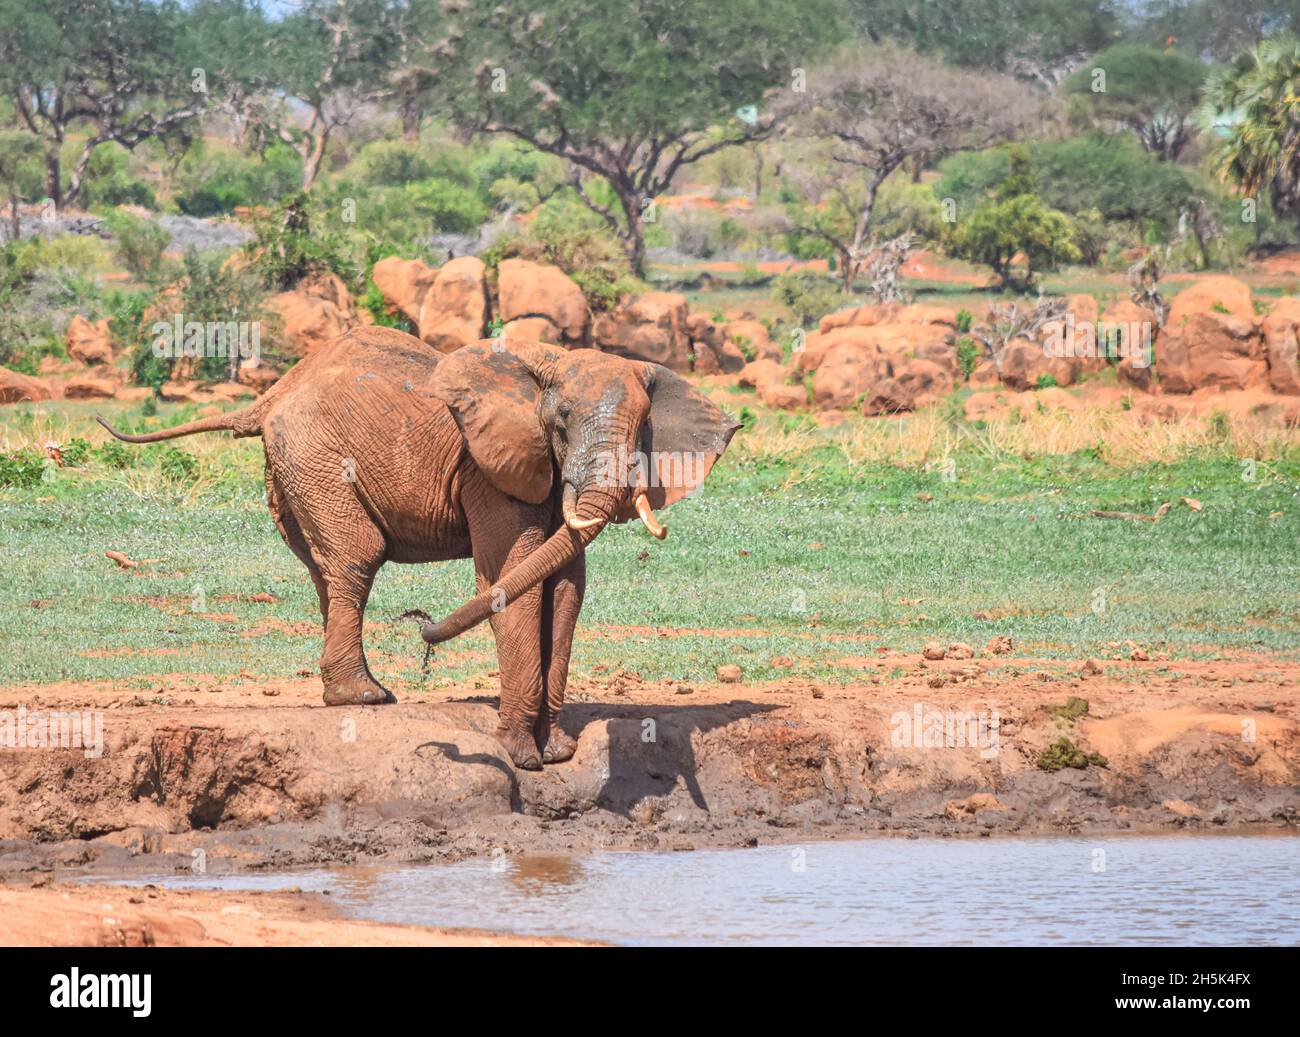 Un gros éléphant de taureau (Loxodonta africana) vaporise de l'eau boueuse sur lui-même dans un trou d'eau.Parc national de Tsavo East, Kenya. Banque D'Images